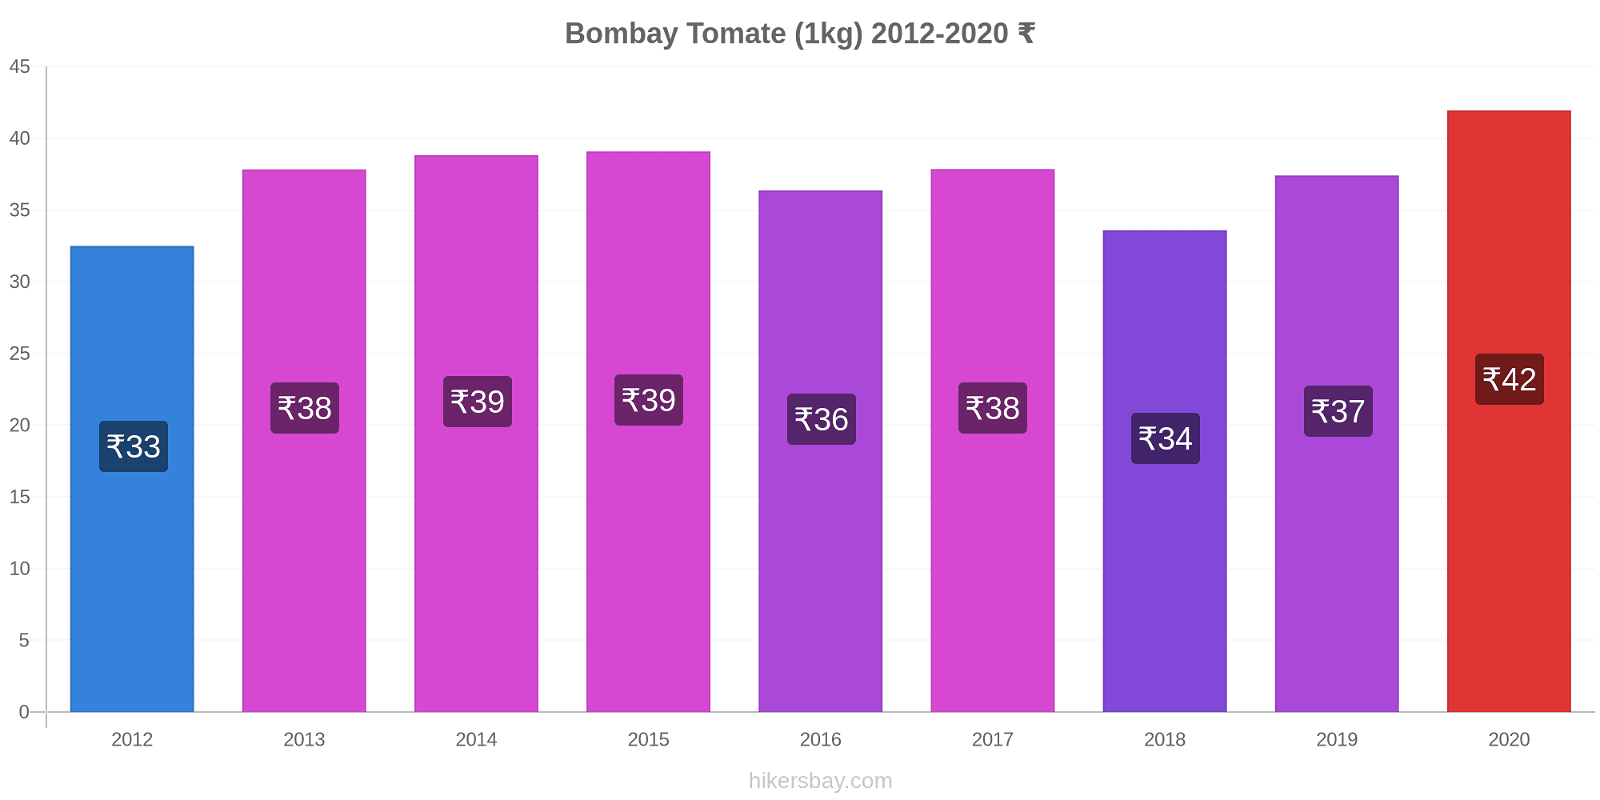 Bombay changements de prix Tomate (1kg) hikersbay.com